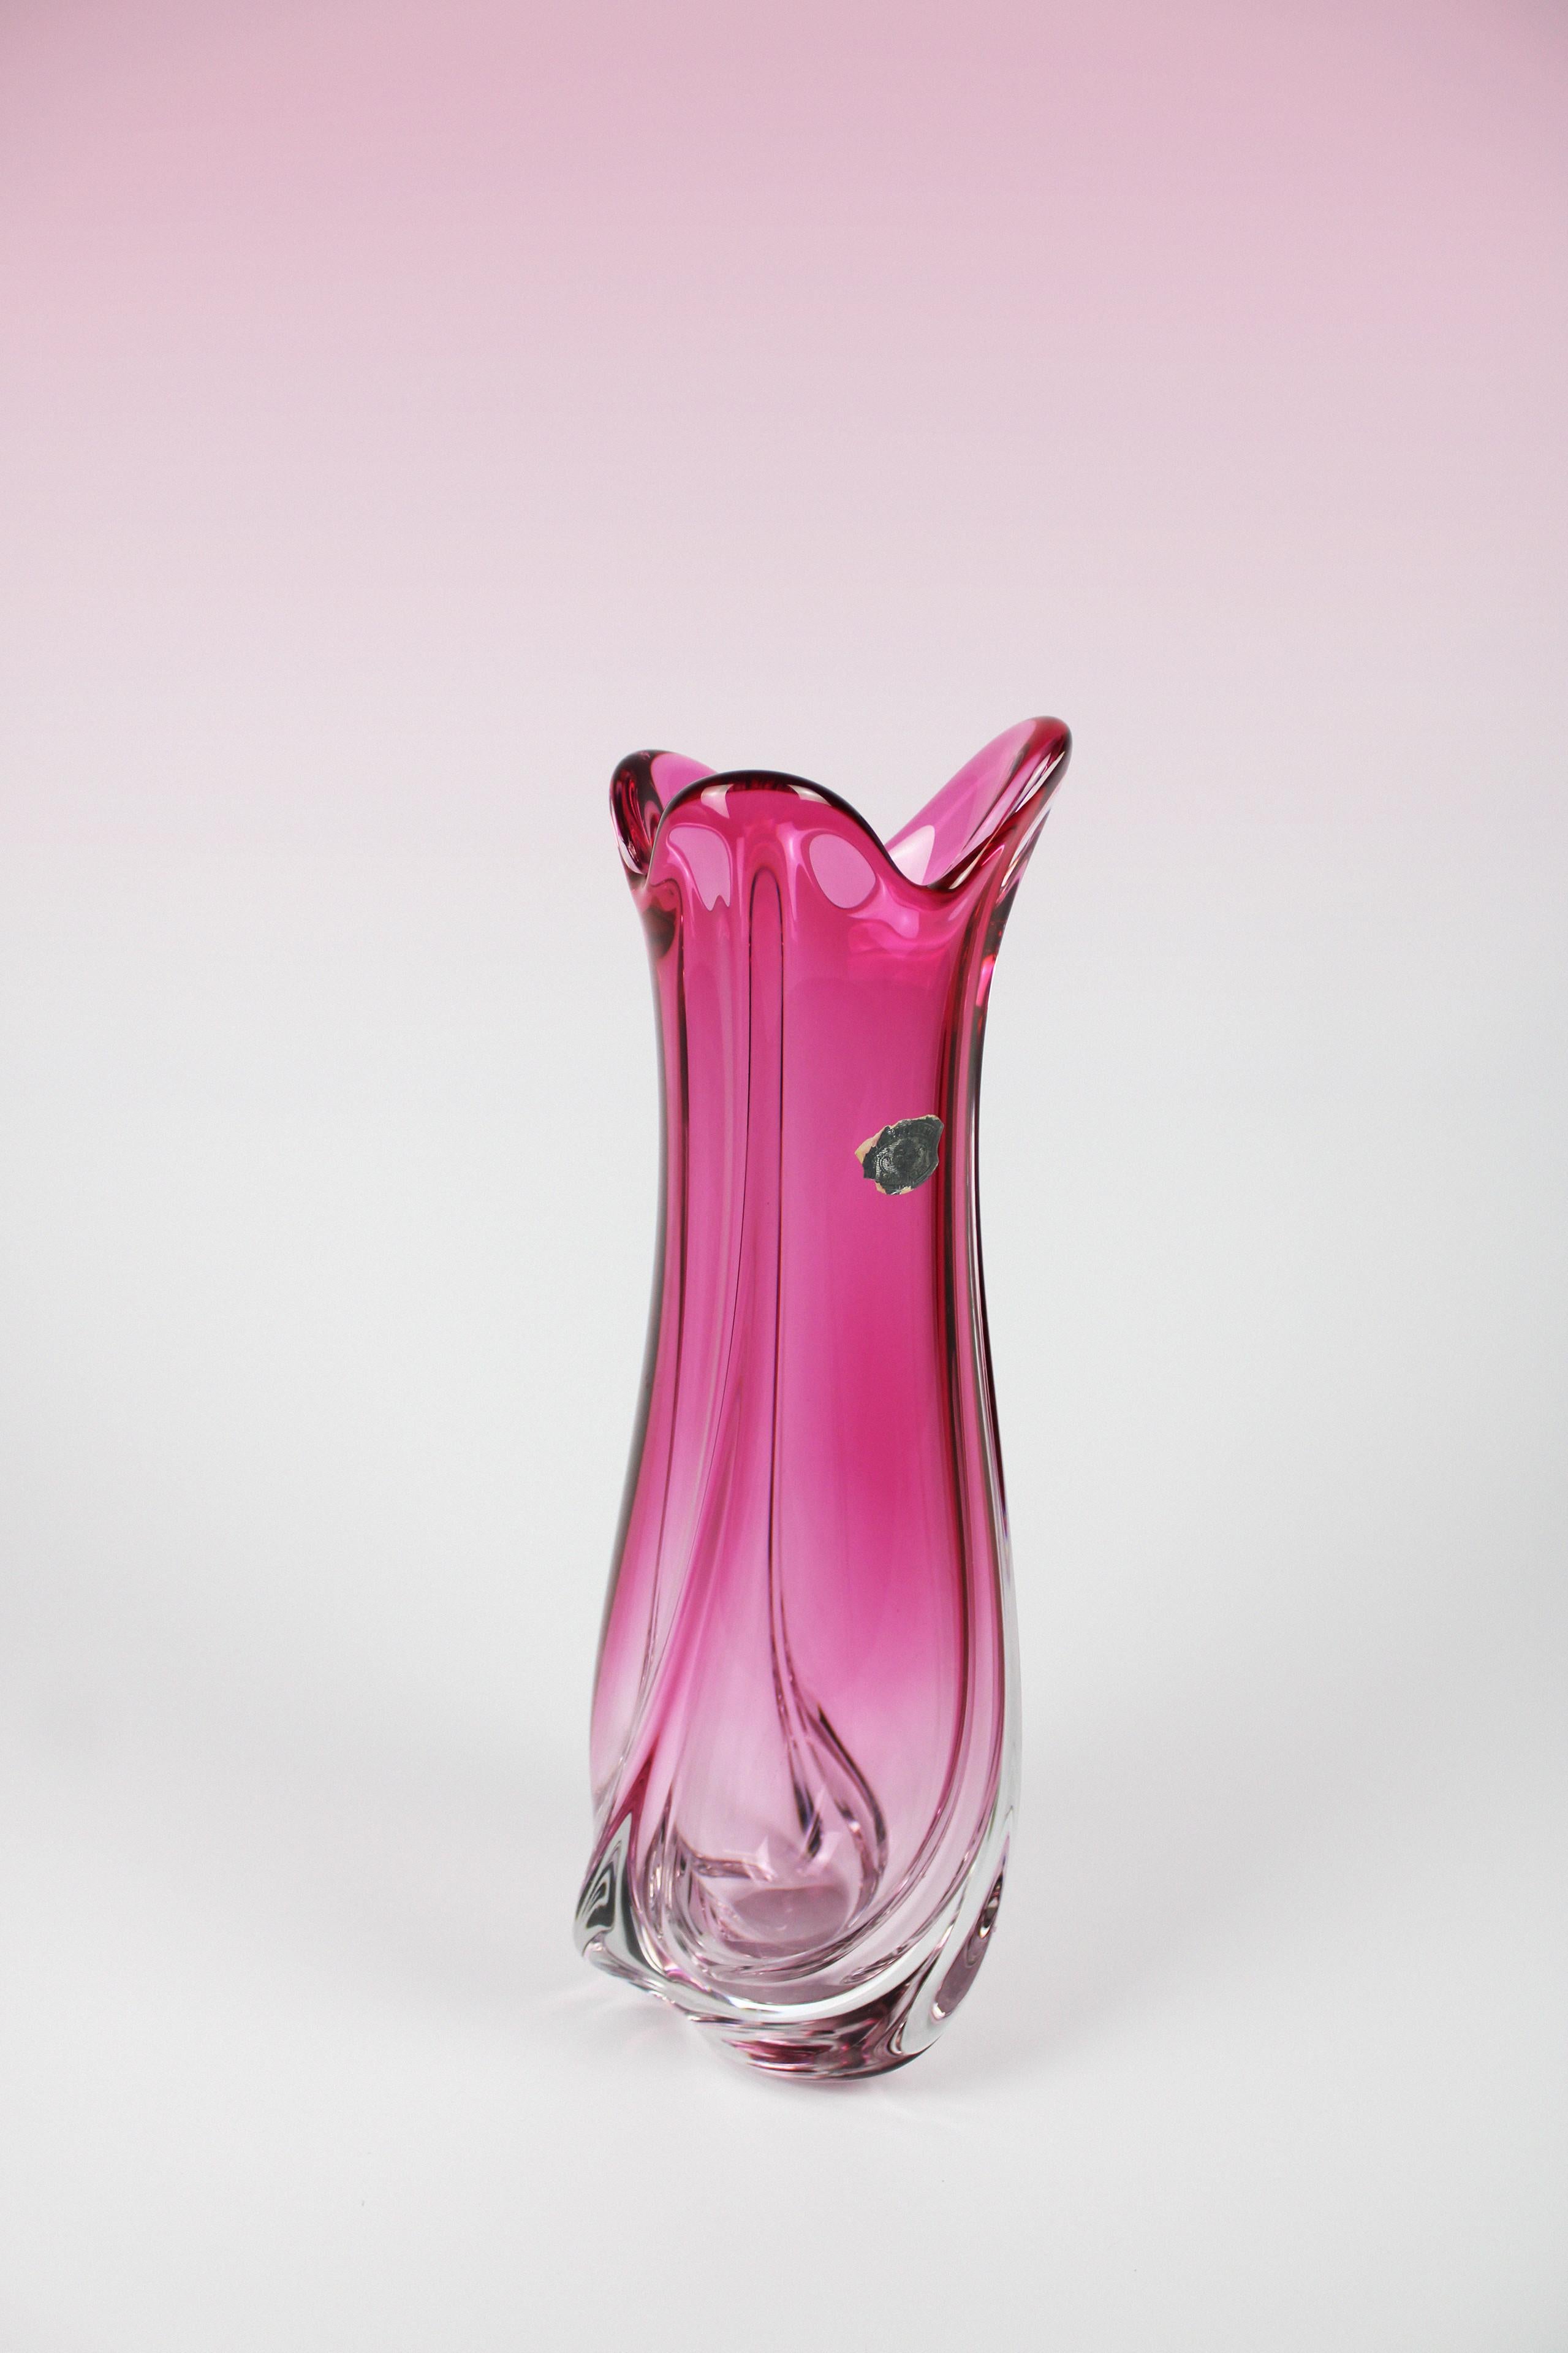 Diese Kristallvase von Val St. Lambert, einer belgischen Manufaktur, die für ihre Glaswaren bekannt ist, ist ein besonderes Stück für Ihr Zuhause. Es handelt sich um eine große Vase mit einer organischen Form, die durch ihre rosa Farbe sofort ins